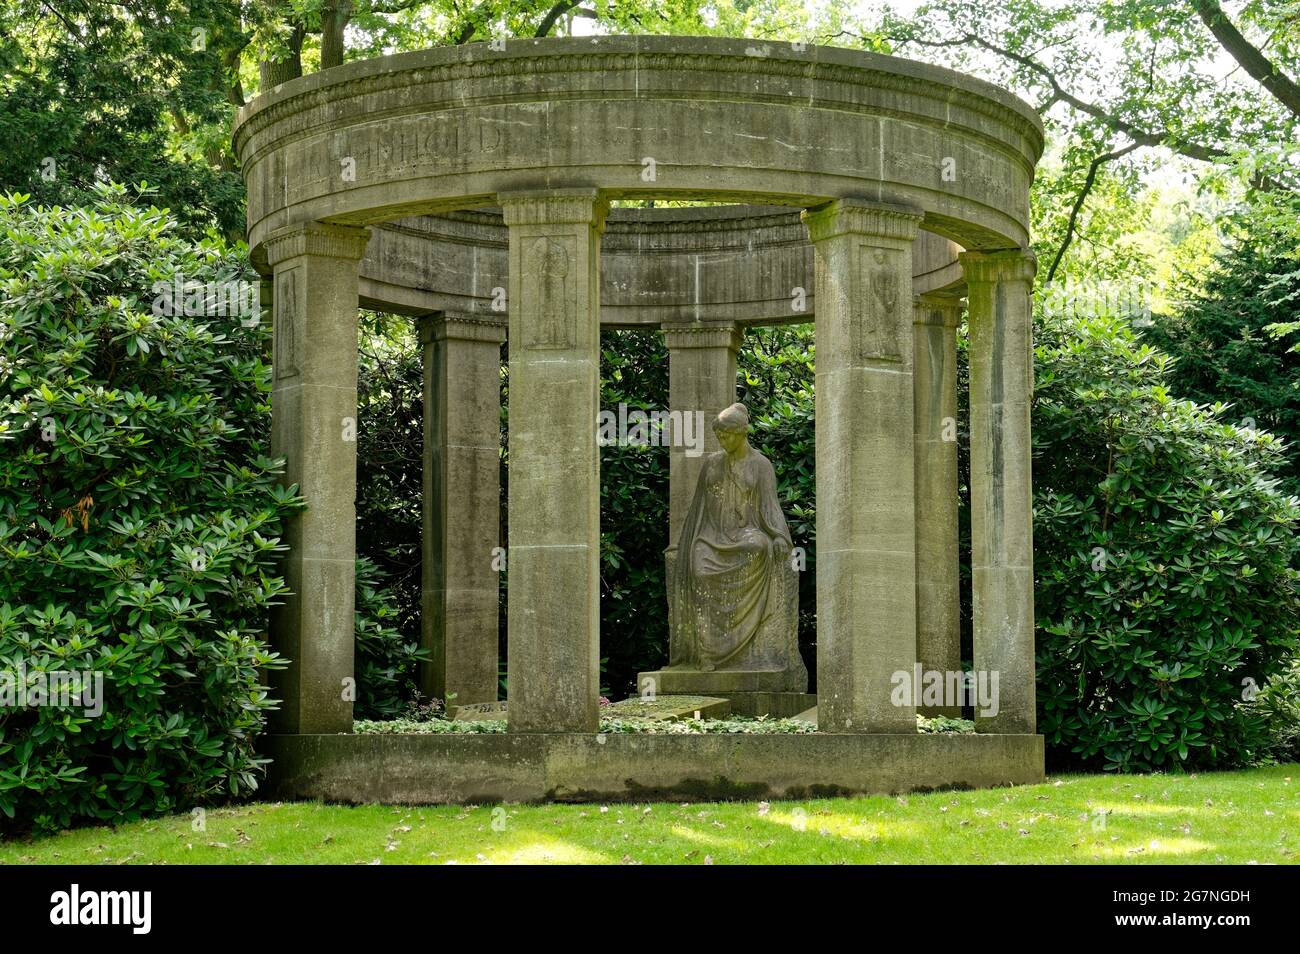 Frauenskulptur in einer Rotunde, Grabstein, Bildhauerei, Stadtfriedhof Stöcken in Hannover, Deutschland / Germany Stock Photo